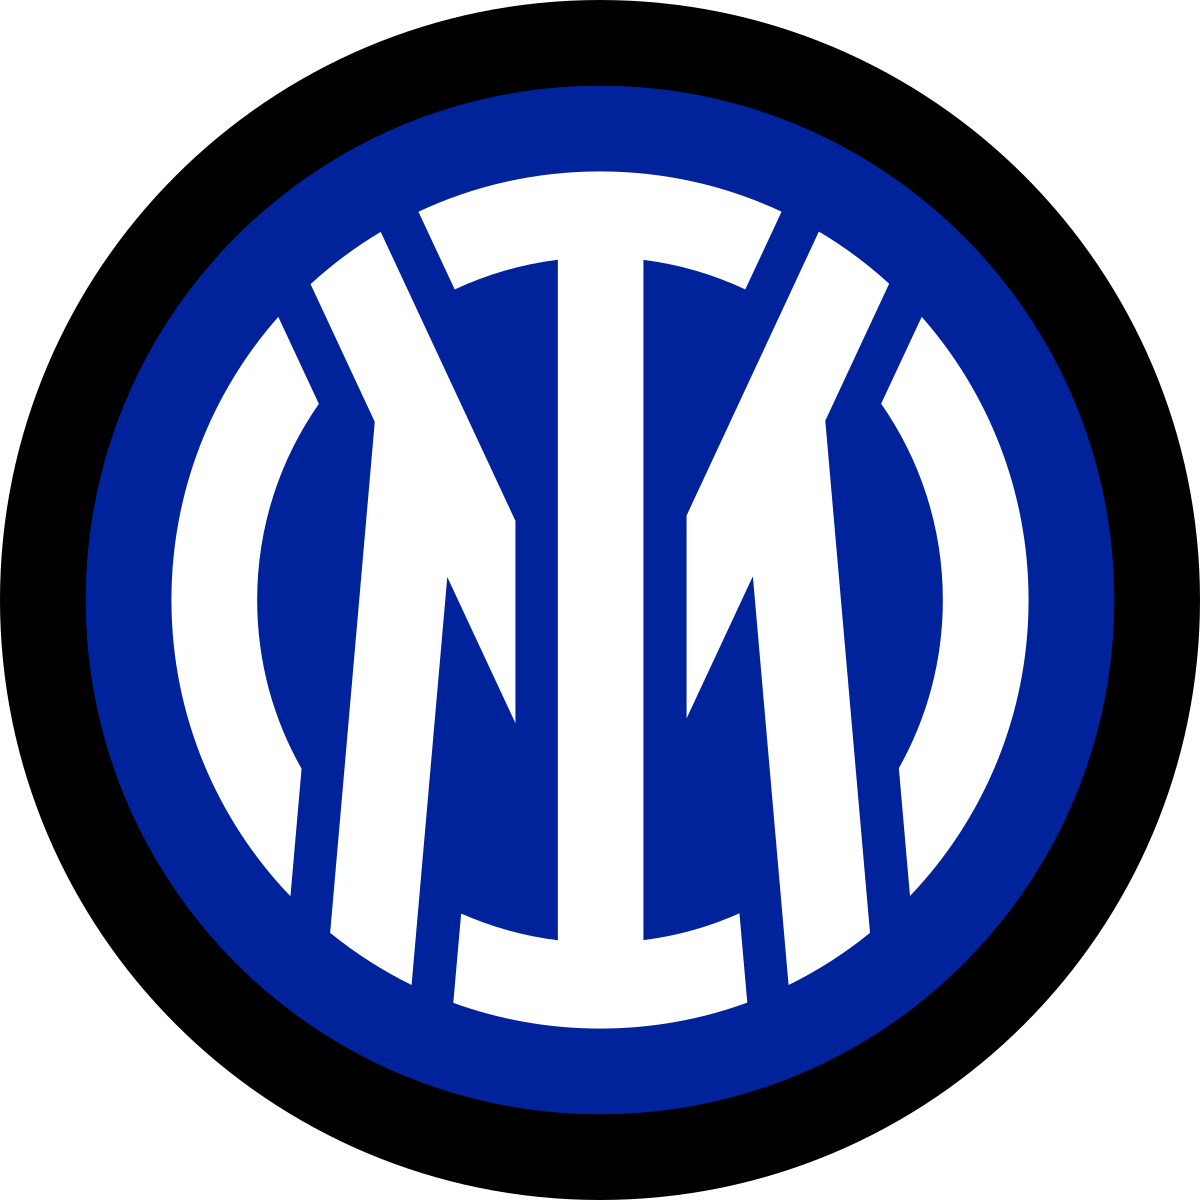 Football Club Internazionale Milano - Wikipedia